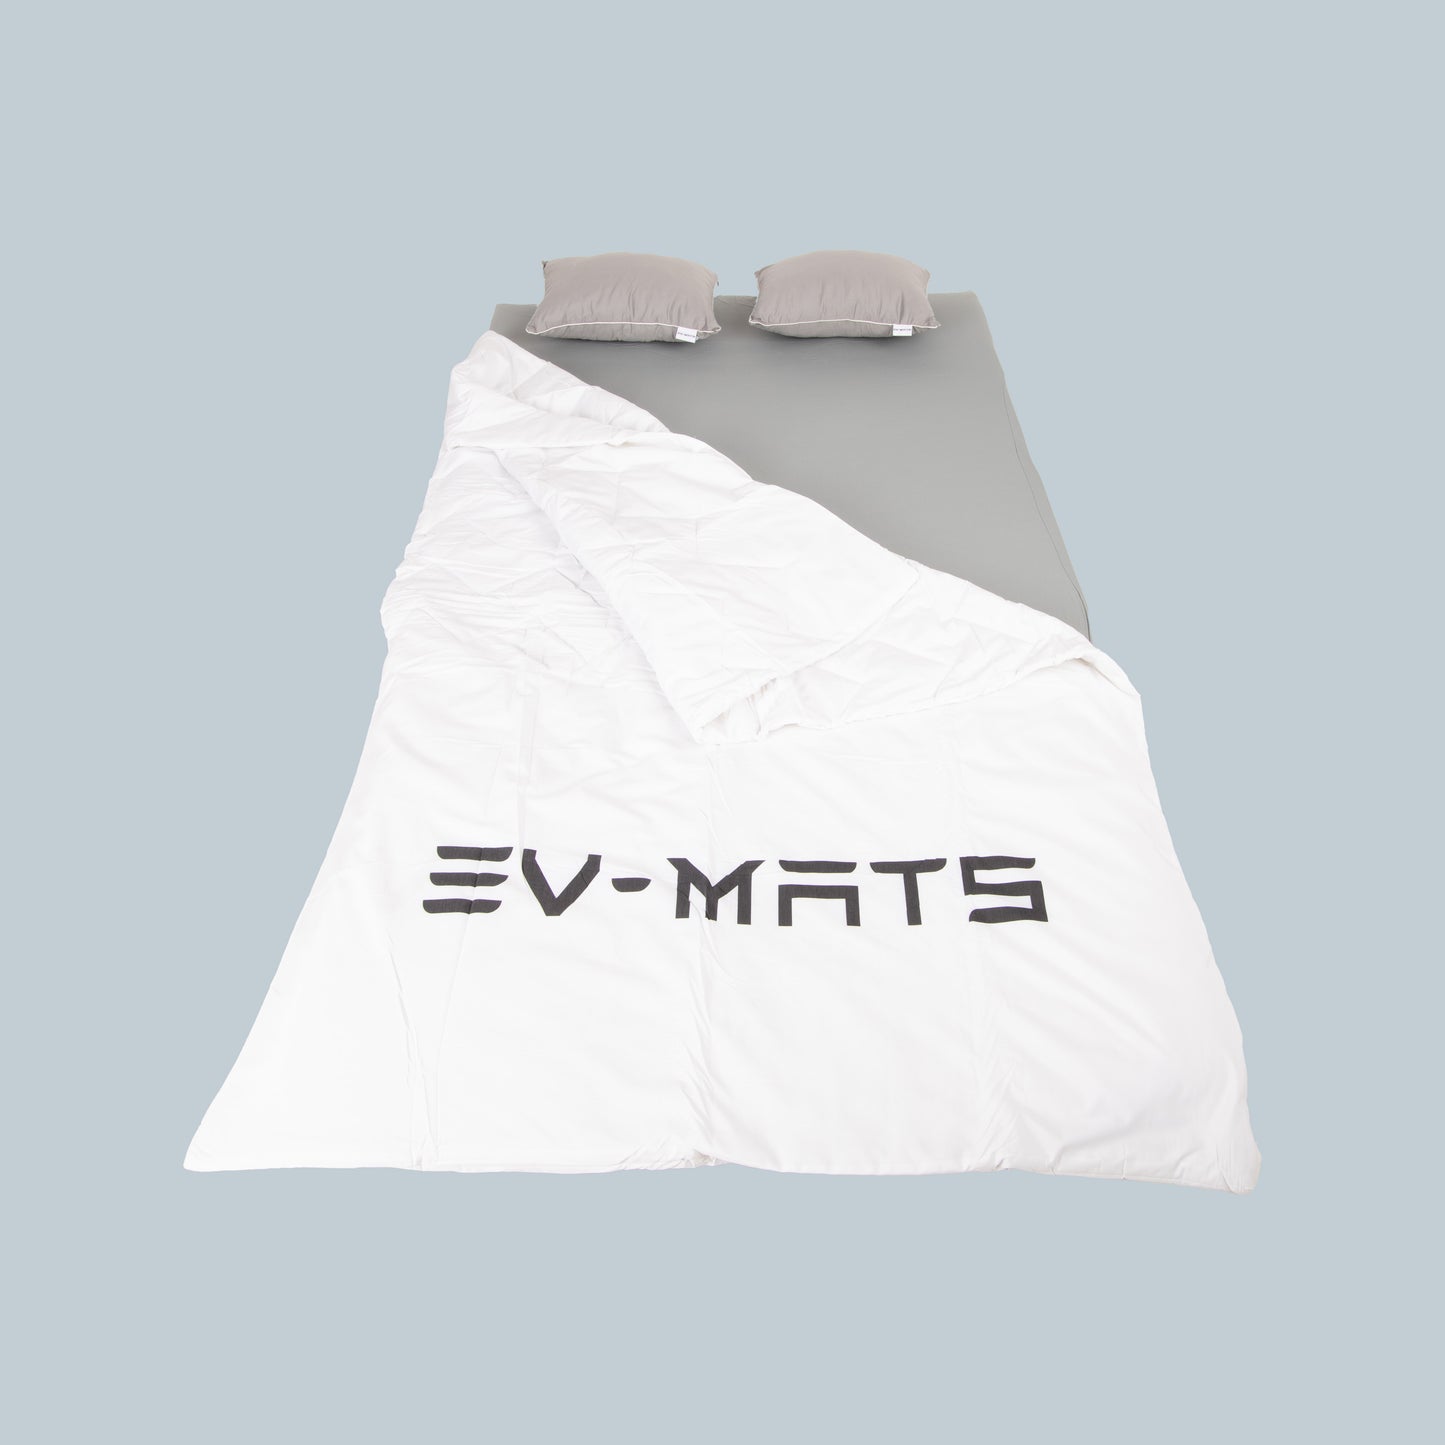 EV-MATS Basic CAMP SET za Tesla Model Y uključuje Tesla madrac, vodootporna torba koja se uklapa u stražnji prtljažnik Tesla Modela Y, plahtu, dekicu, 2 jastuka i jastučnicu